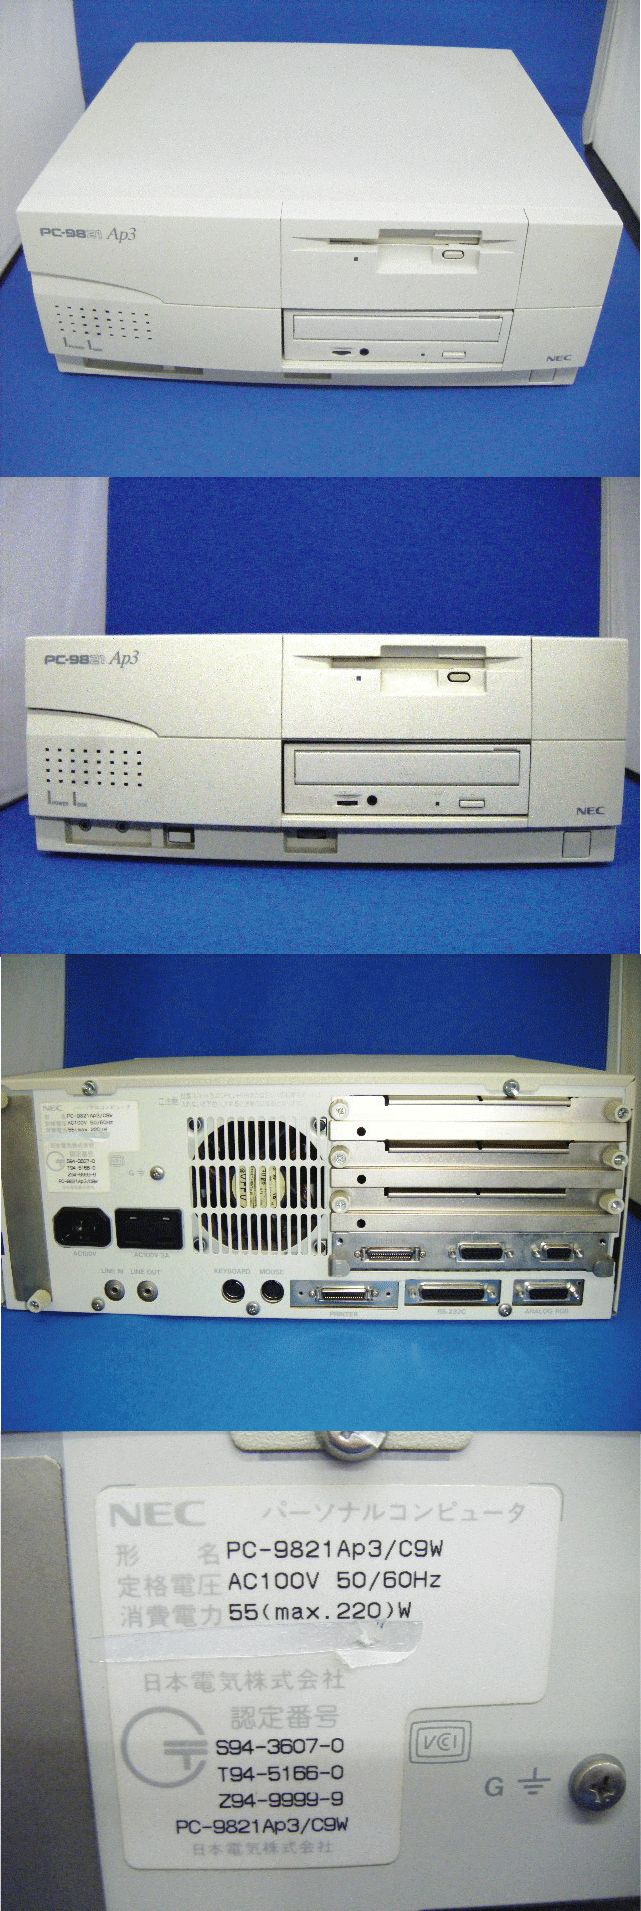 NEC PC-9821 AP3/M2 - パソコン